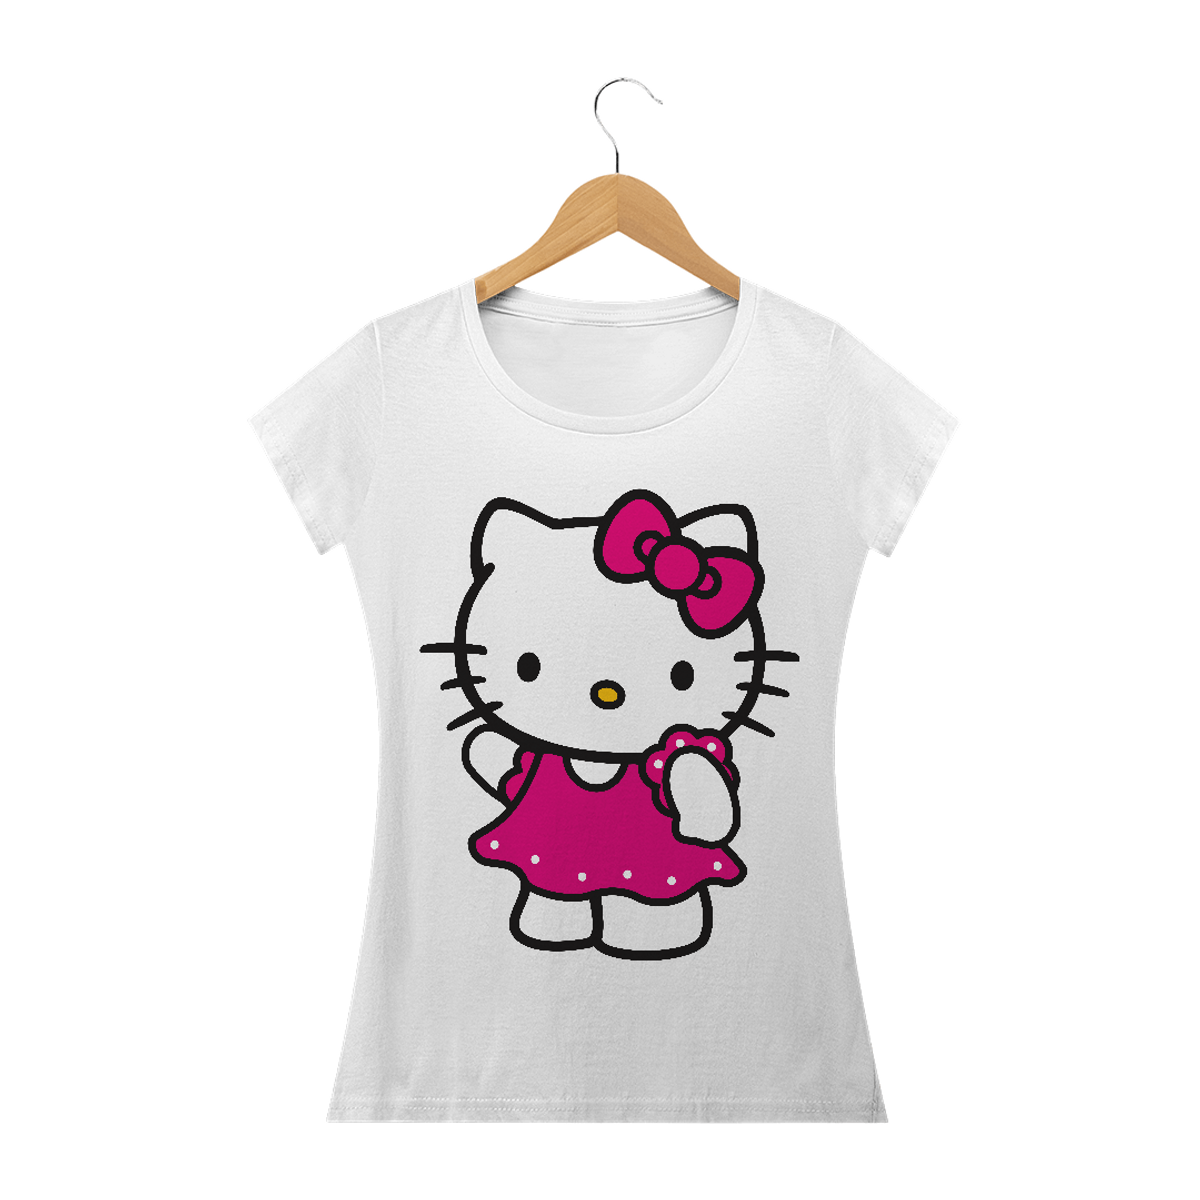 Nome do produto: Hello Kitty 05